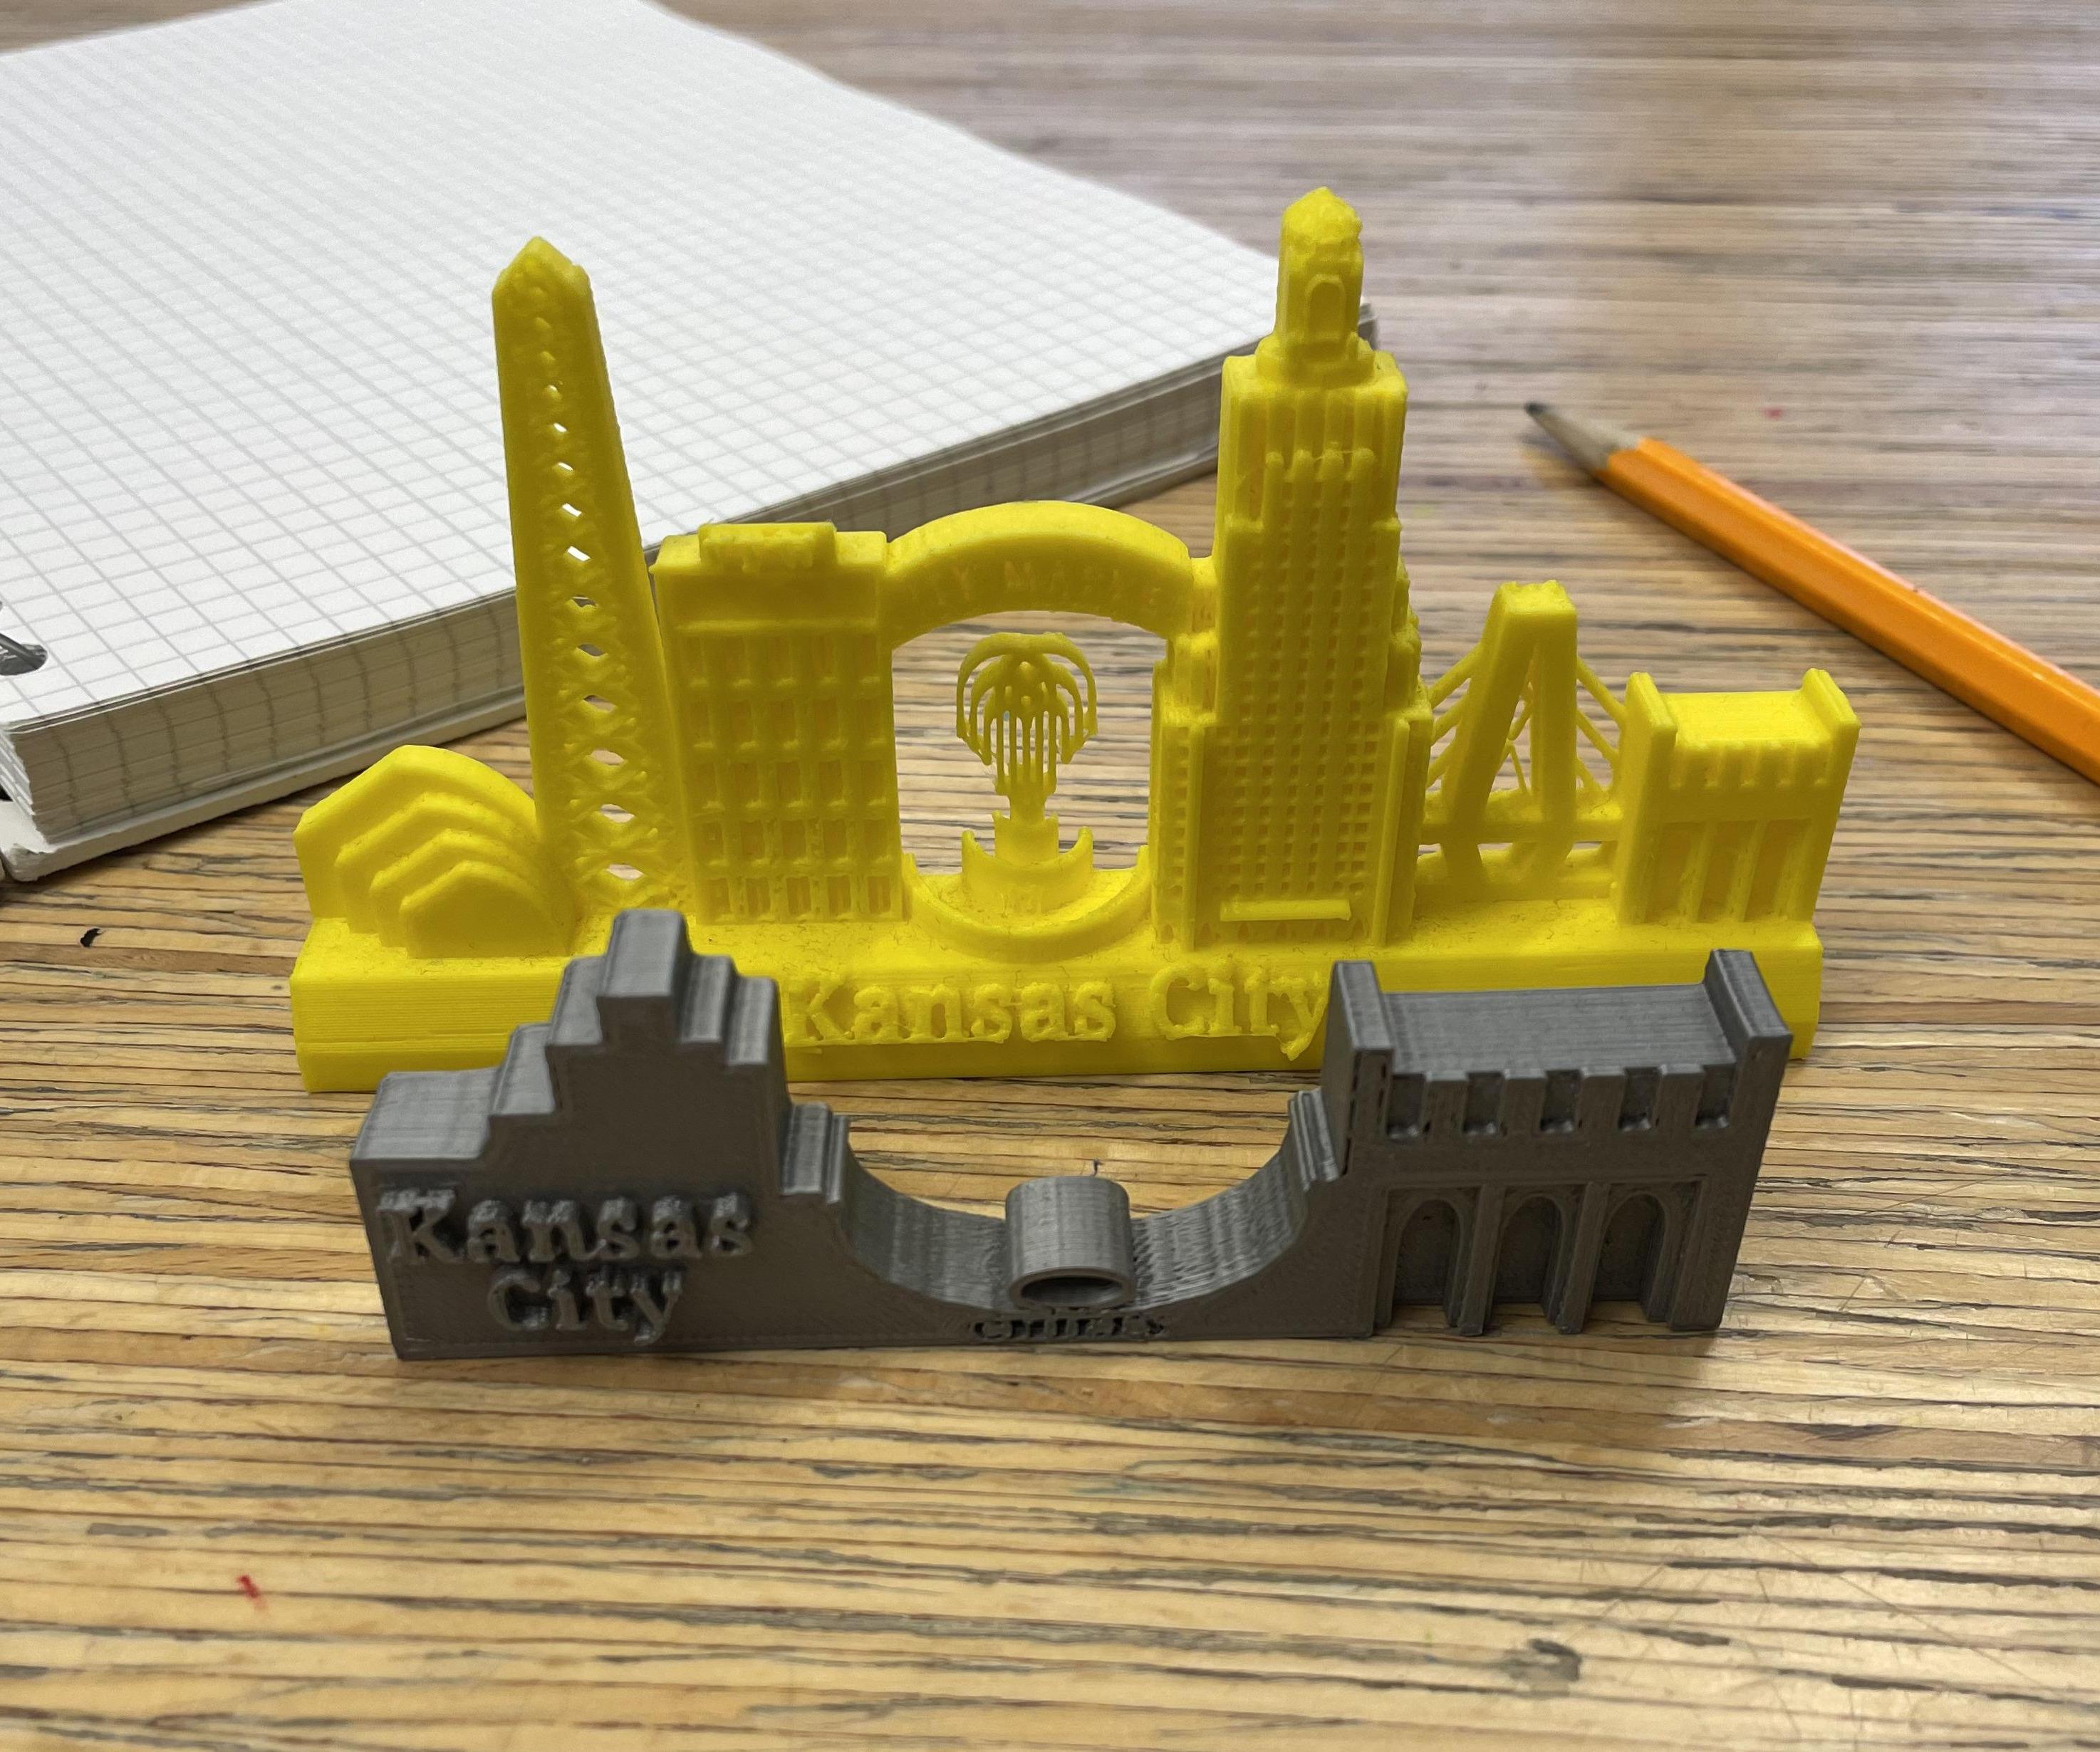 3D Print Your Own City Skyline